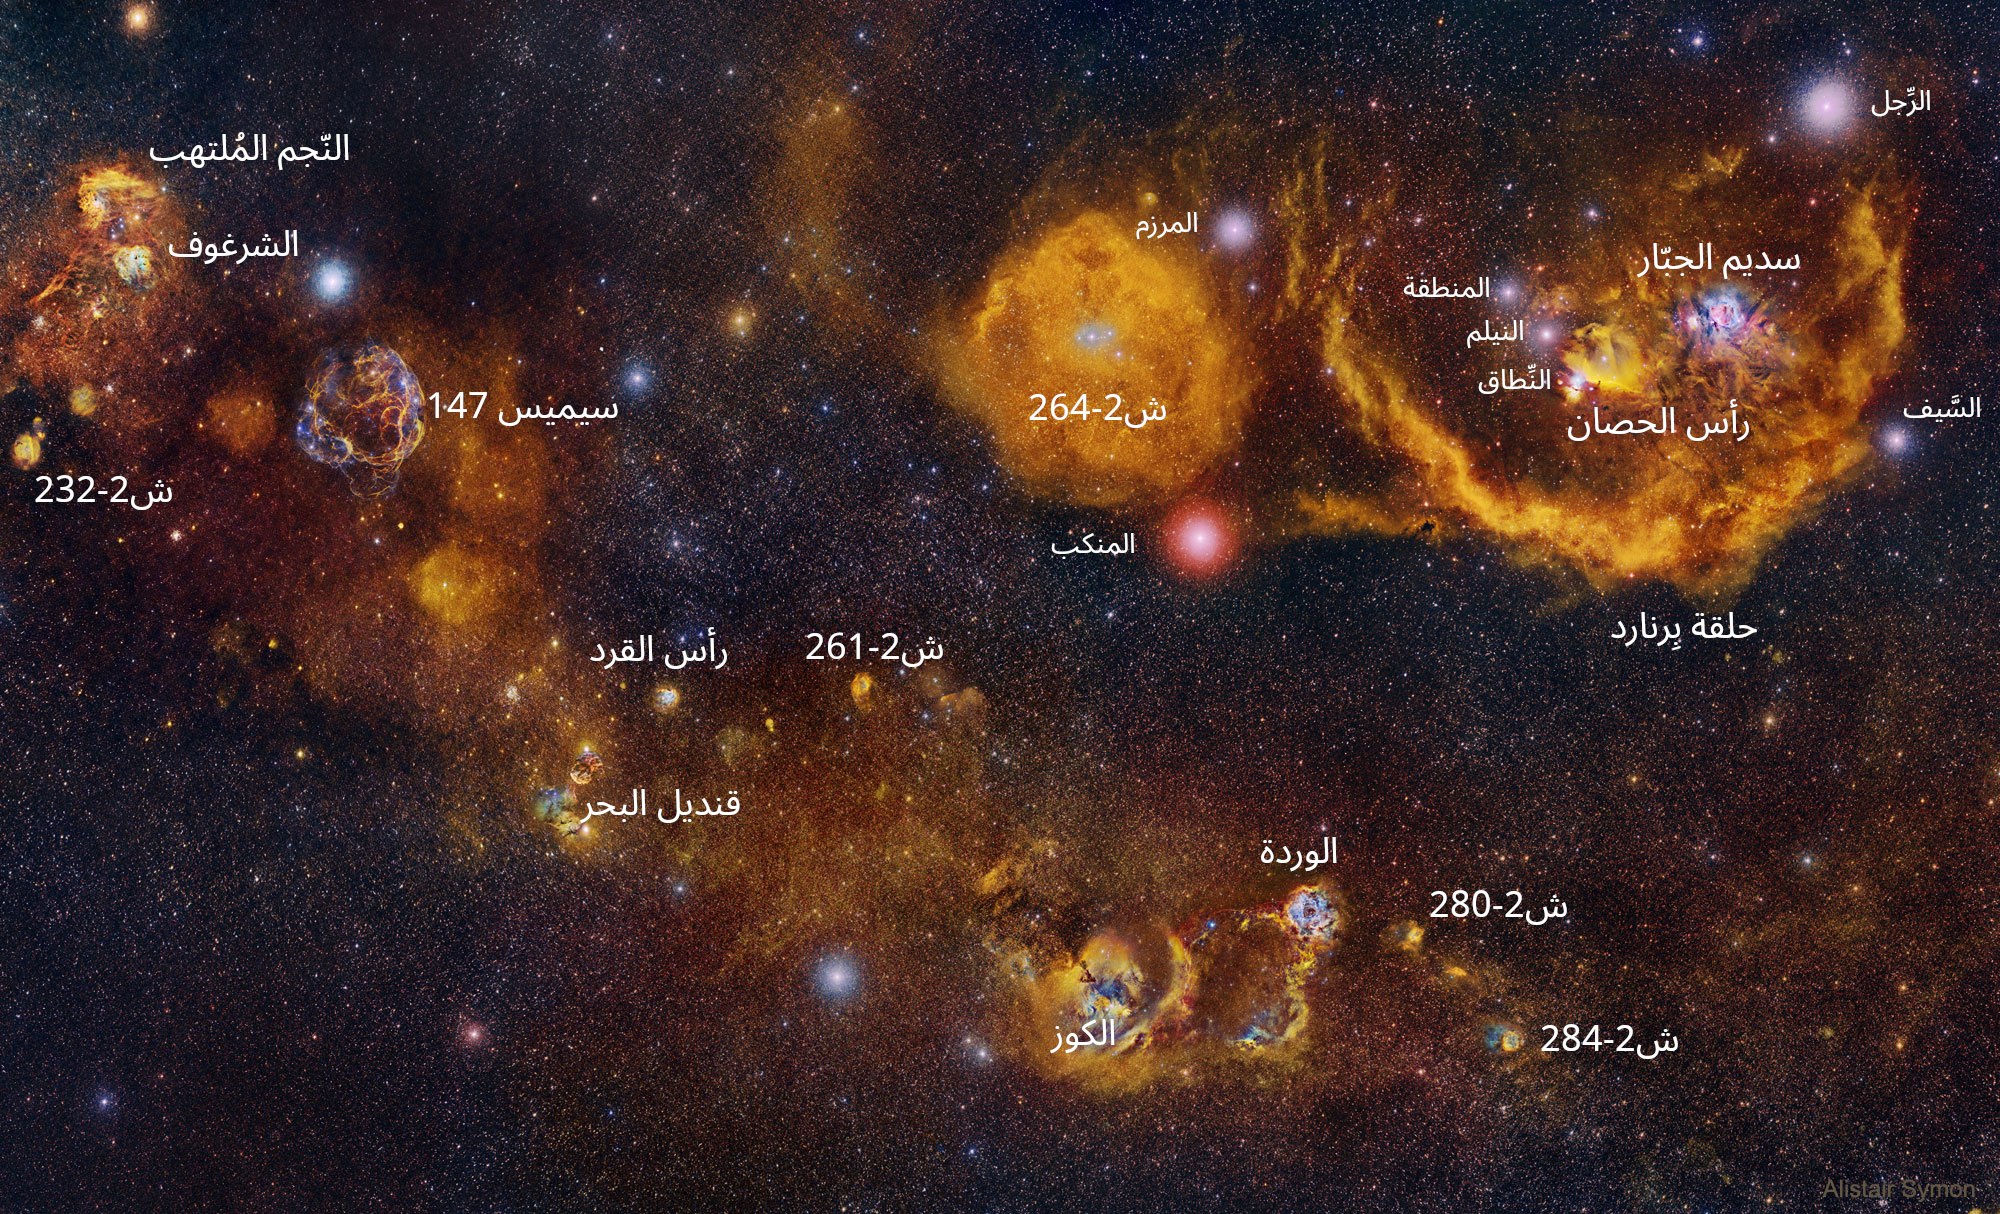 صورة مُعنونة لمساحة من السماء بين كوكبتي العنّان والجبّار، تعجّ بالسُّدم المختلفة مع وضوح بعض نجوم كوكبة الجبّار